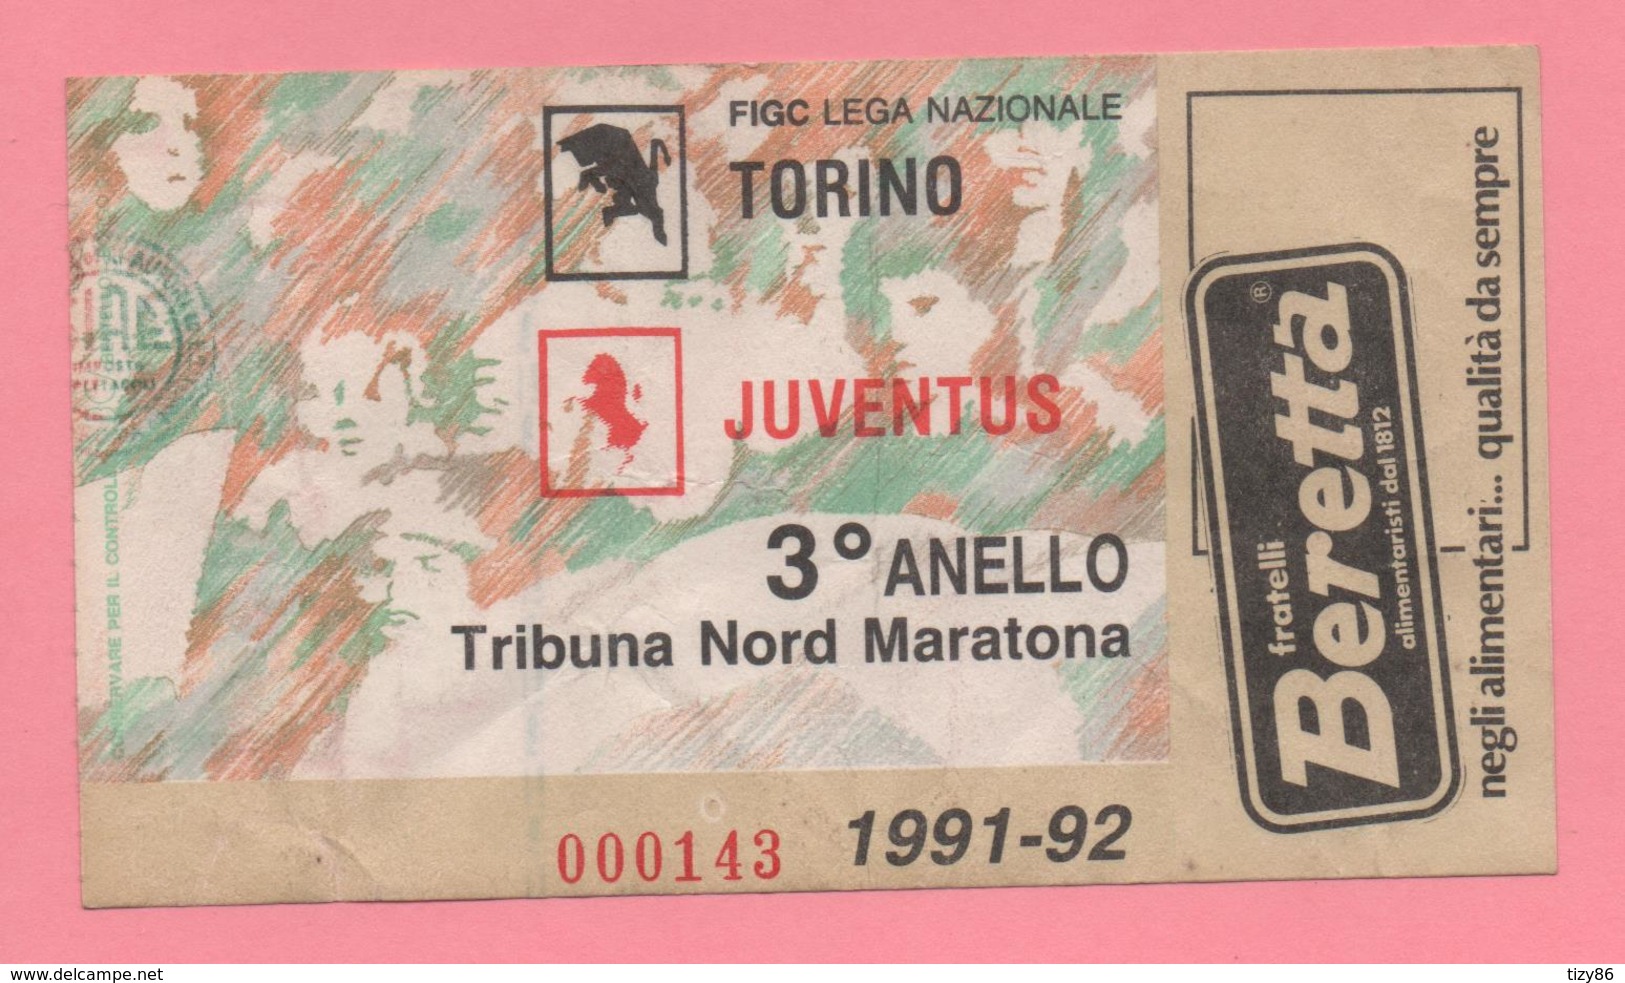 Biglietto D'ingresso Stadio Torino Juventus 1991-92 - Tickets - Vouchers